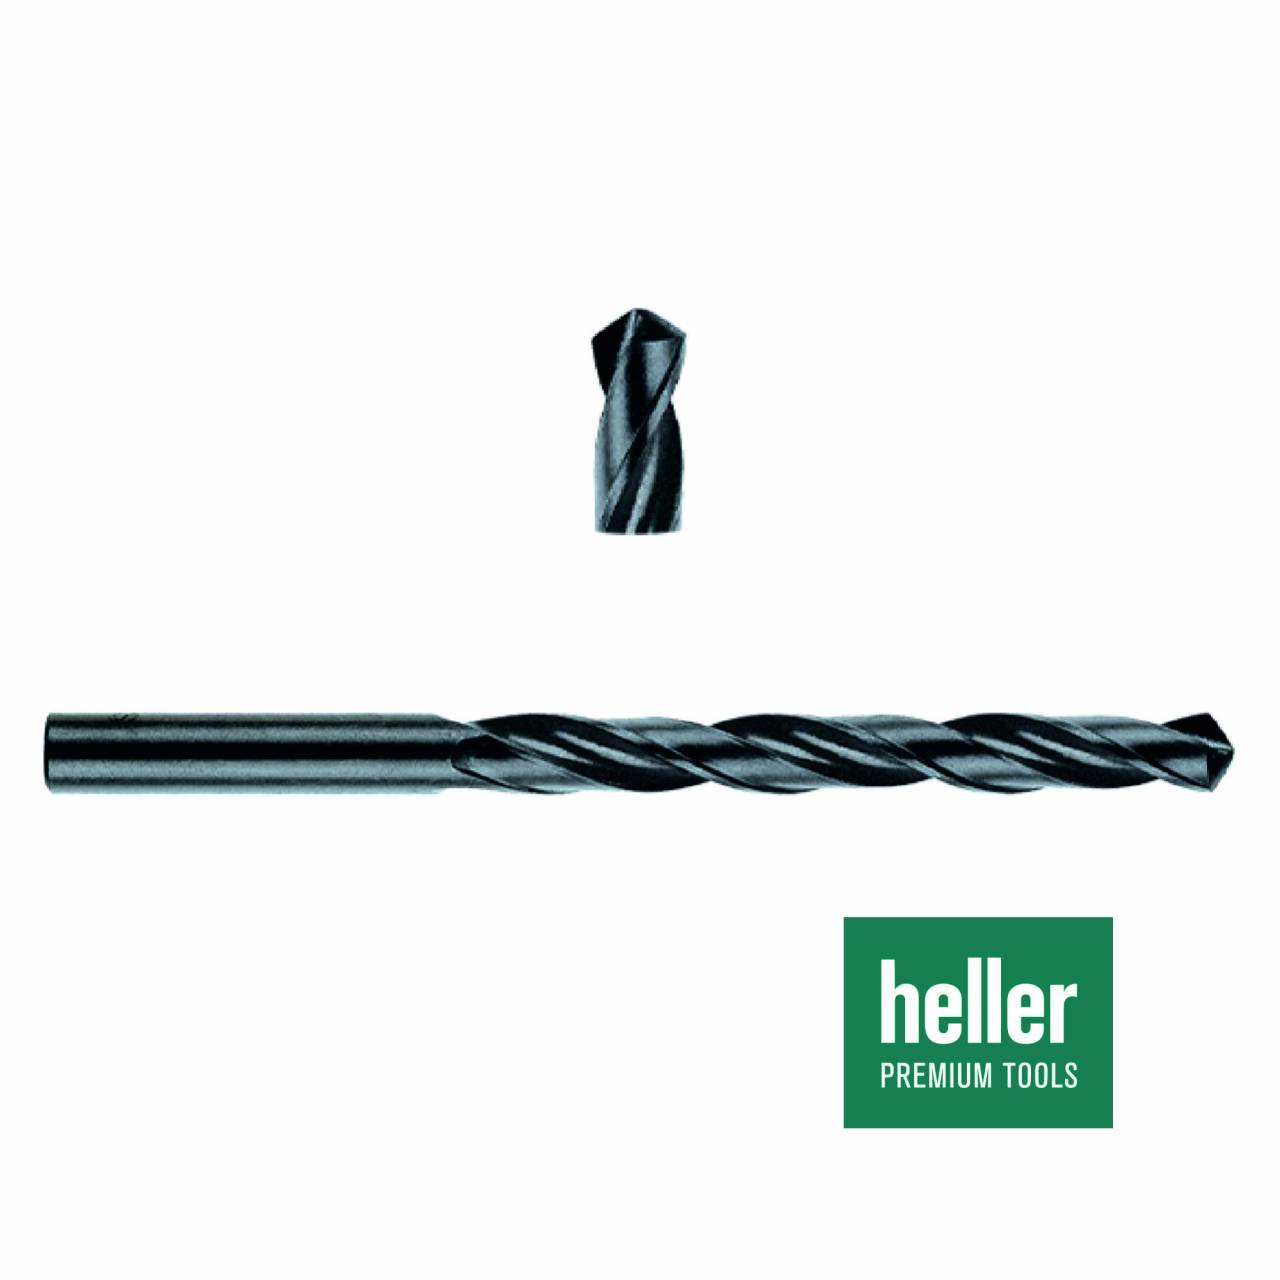 Stahlbohrer HSS-R 'Heller®' Ø 3,2 x 36 x 65 mm / Pck a 2 Stück